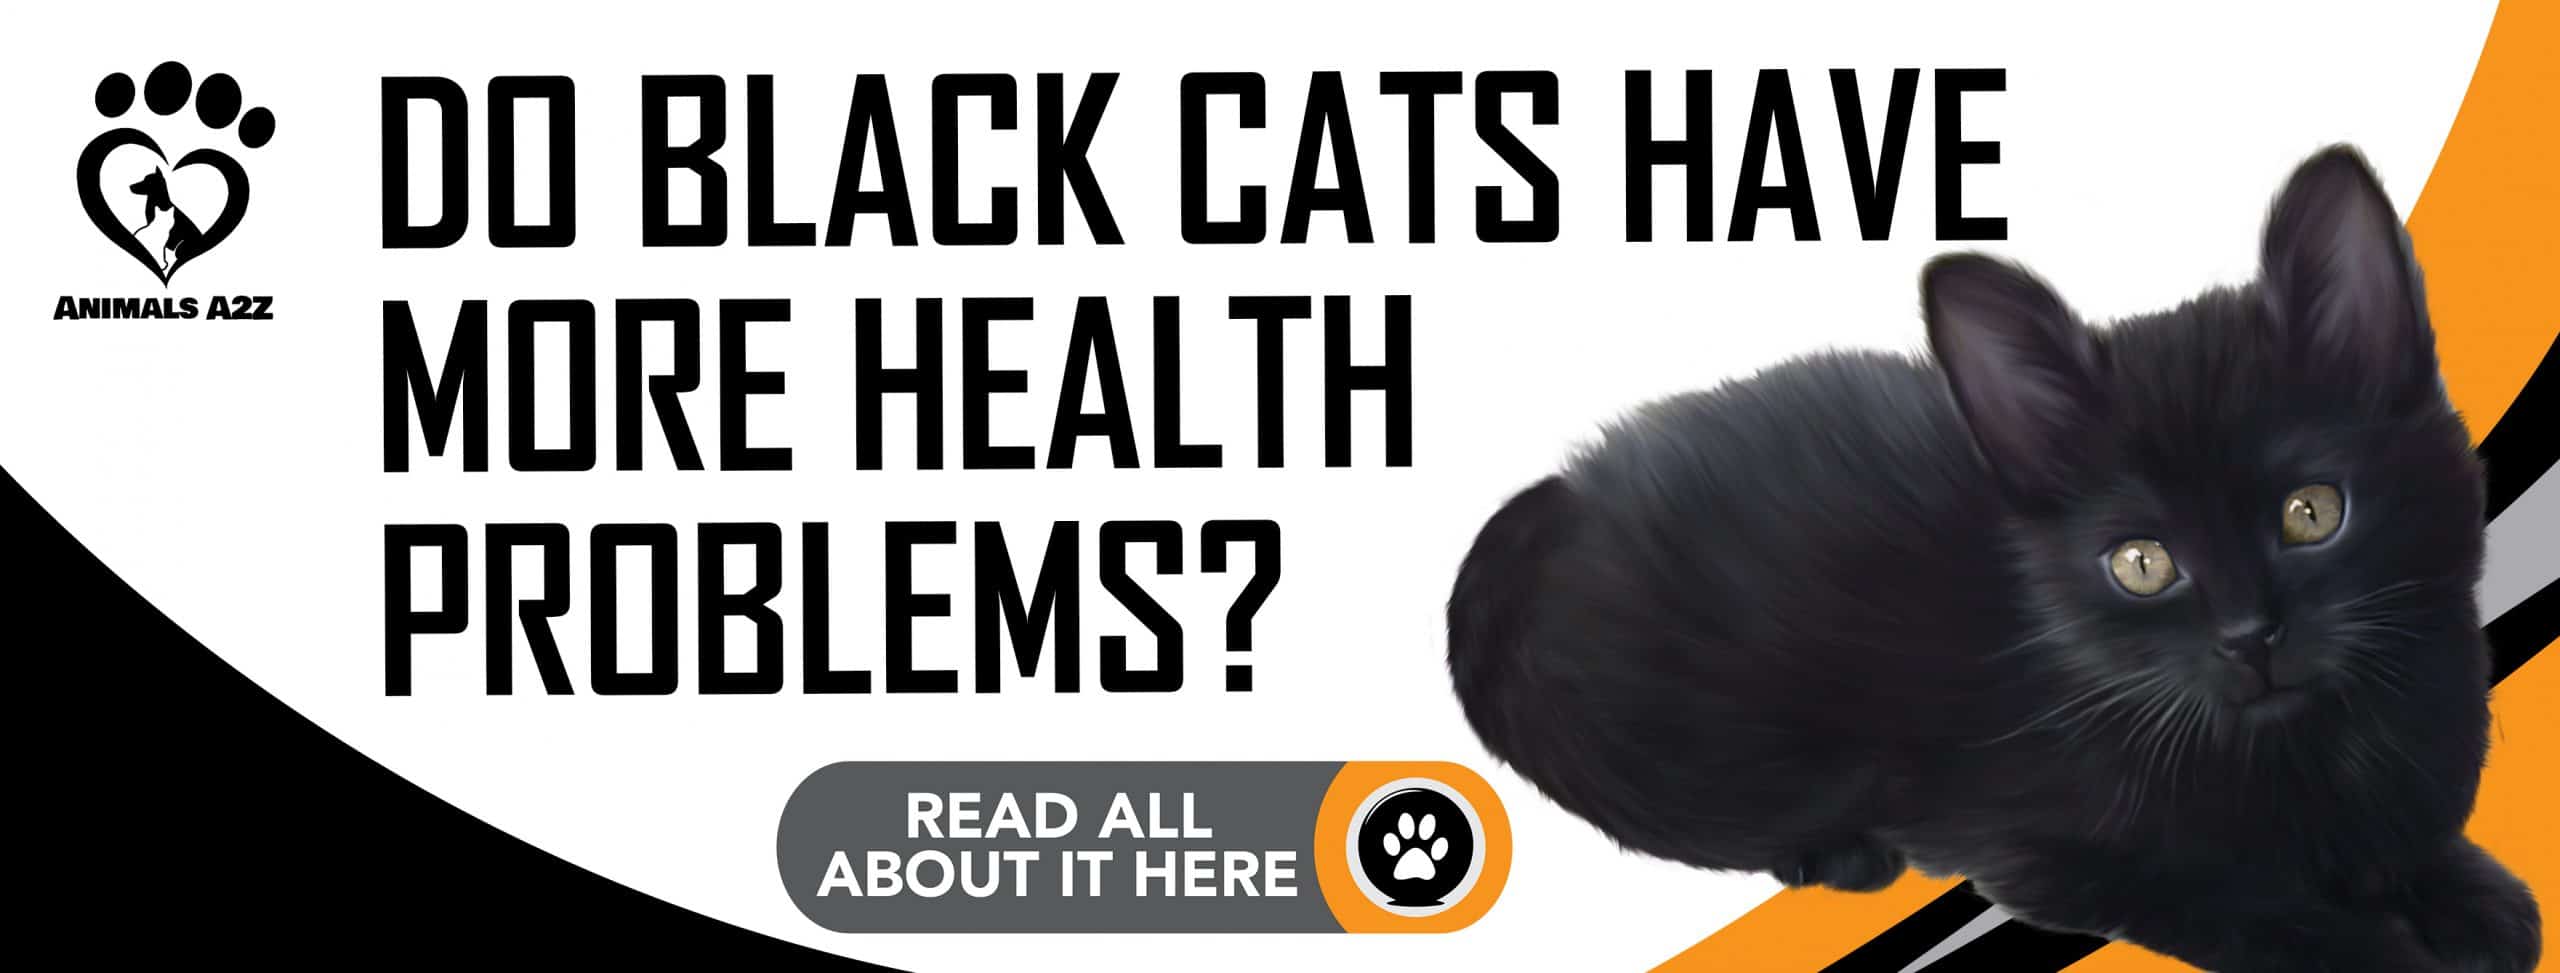 Haben schwarze Katzen mehr gesundheitliche Probleme?